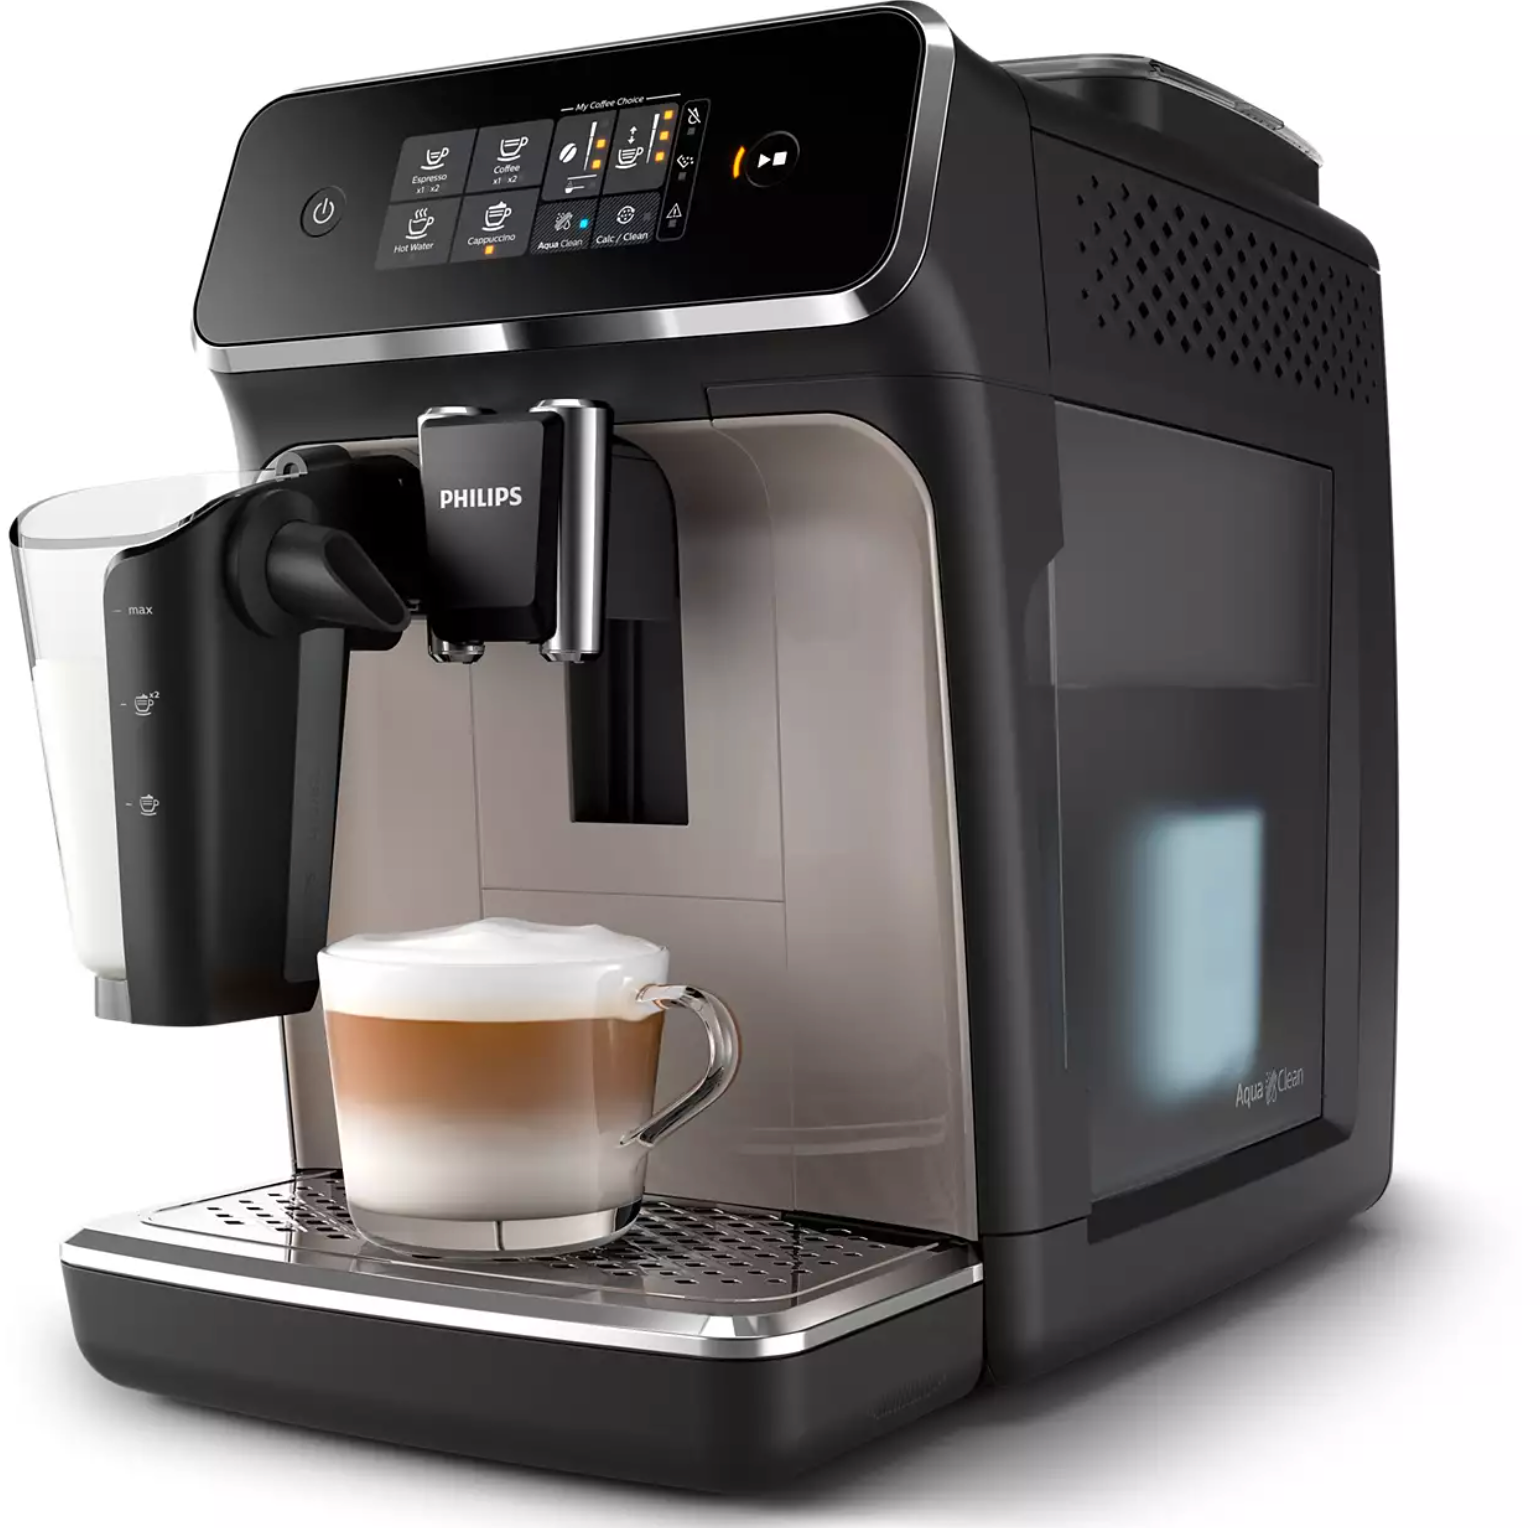 Helautomatisk kaffemaskin från Philips